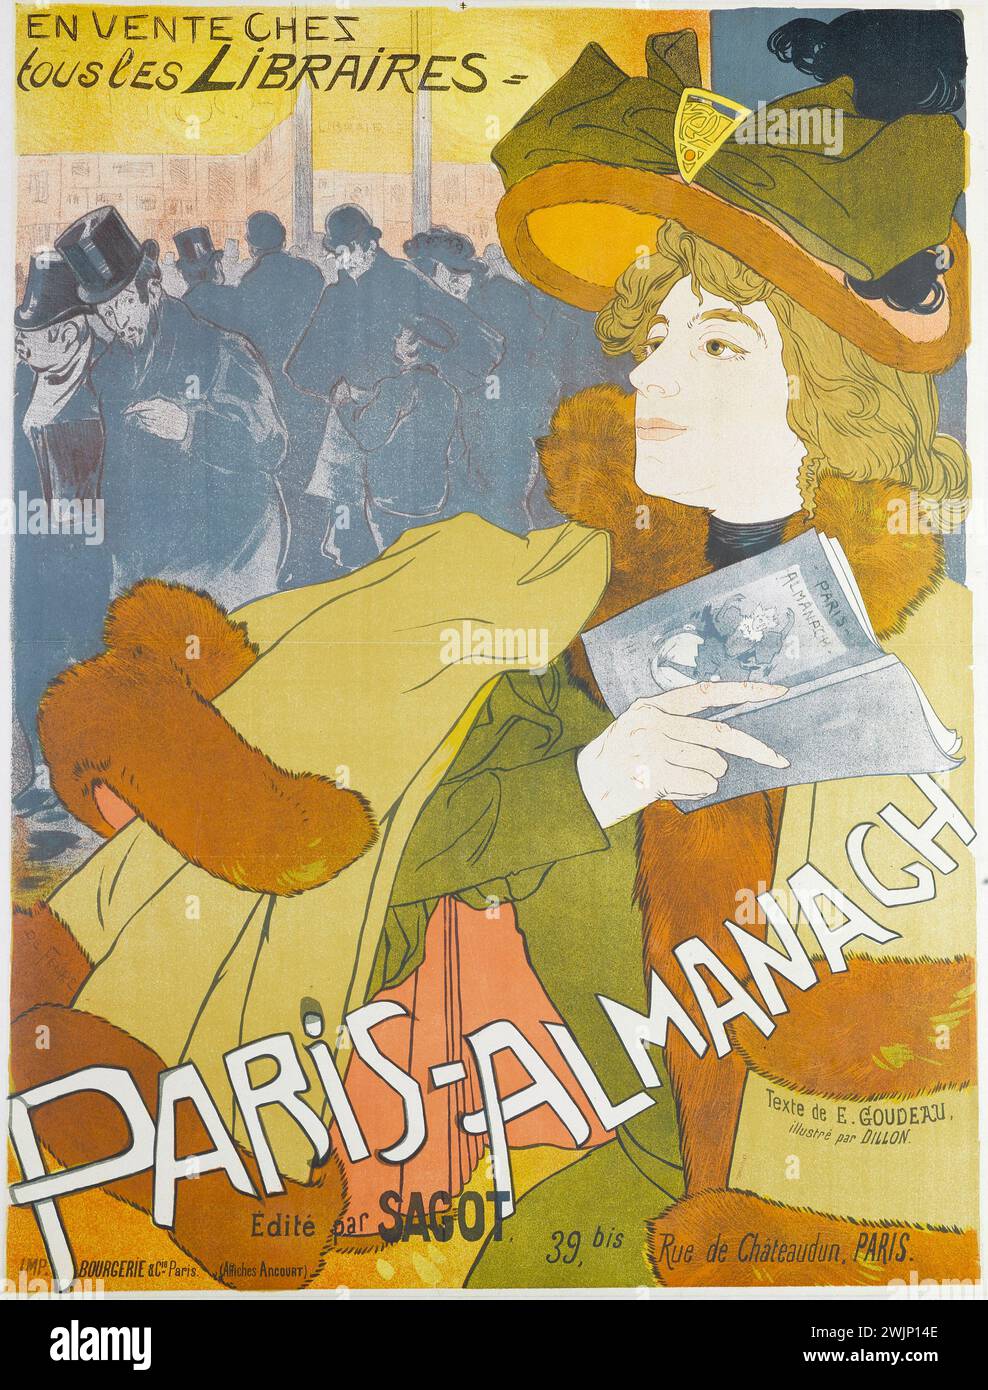 Affiche française vintage pour PARIS-ALMANACH par Georges de Feure. Lithographie couleur 1894. Banque D'Images